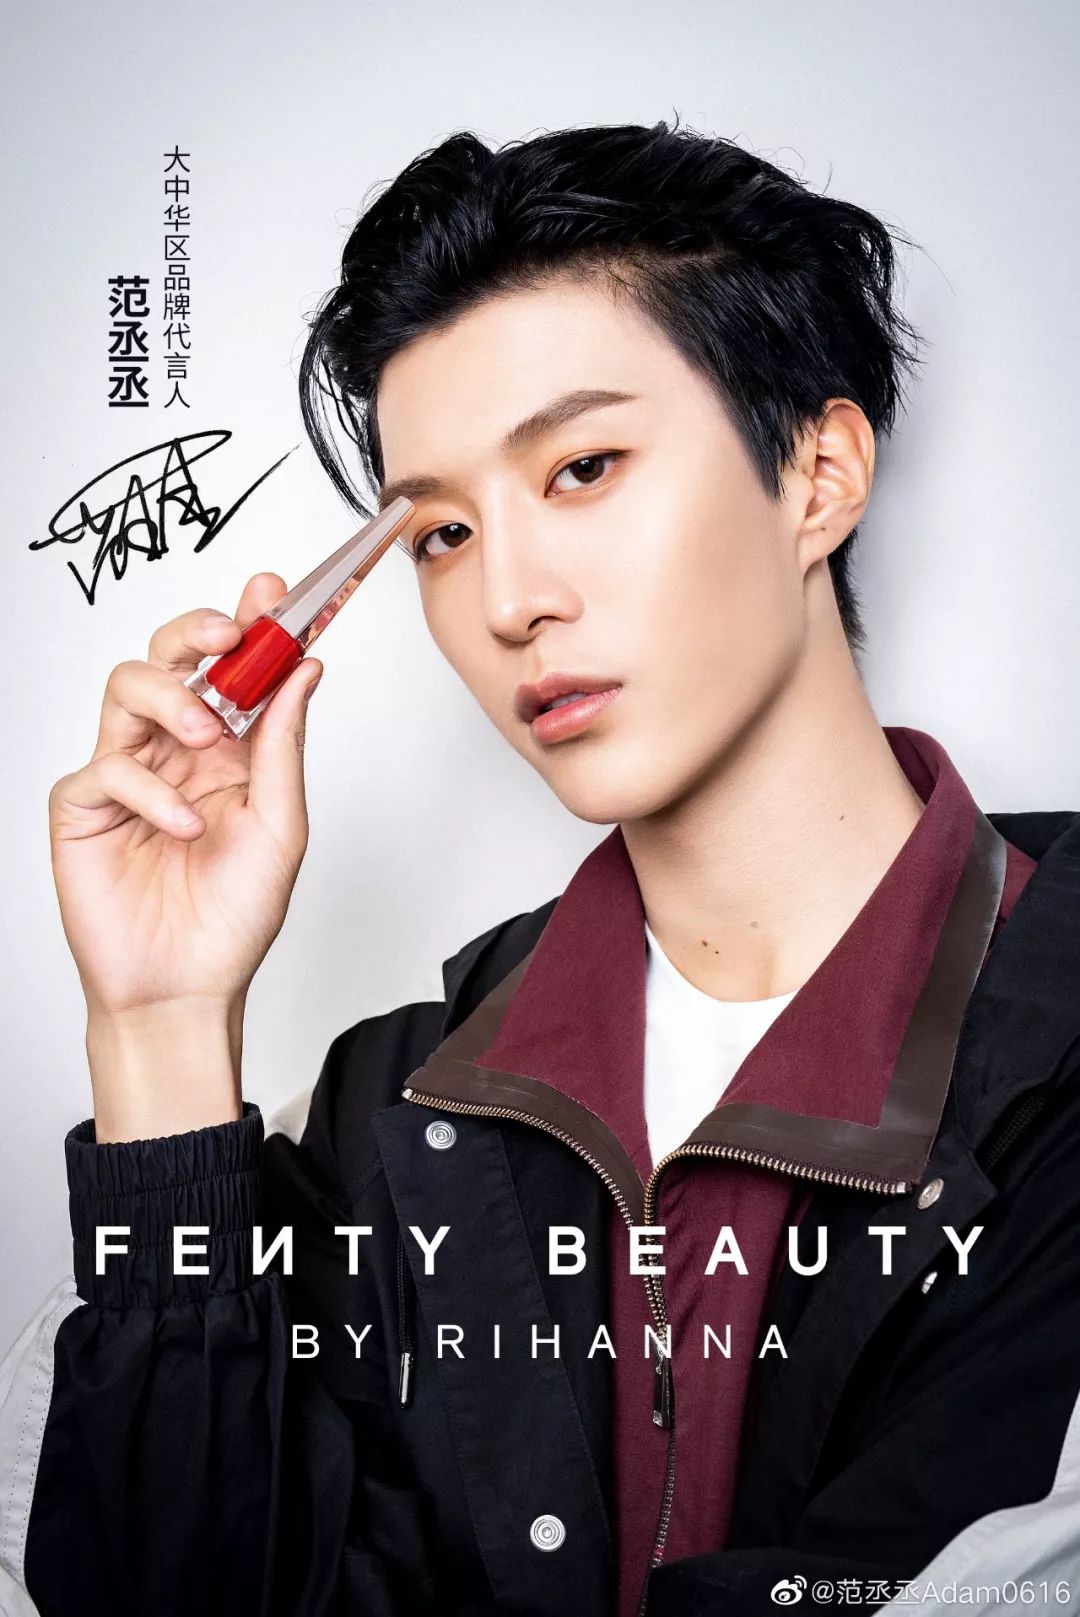 范丞丞代言fenty beauty9月3日,rihanna创立的前卫美妆品牌fenty